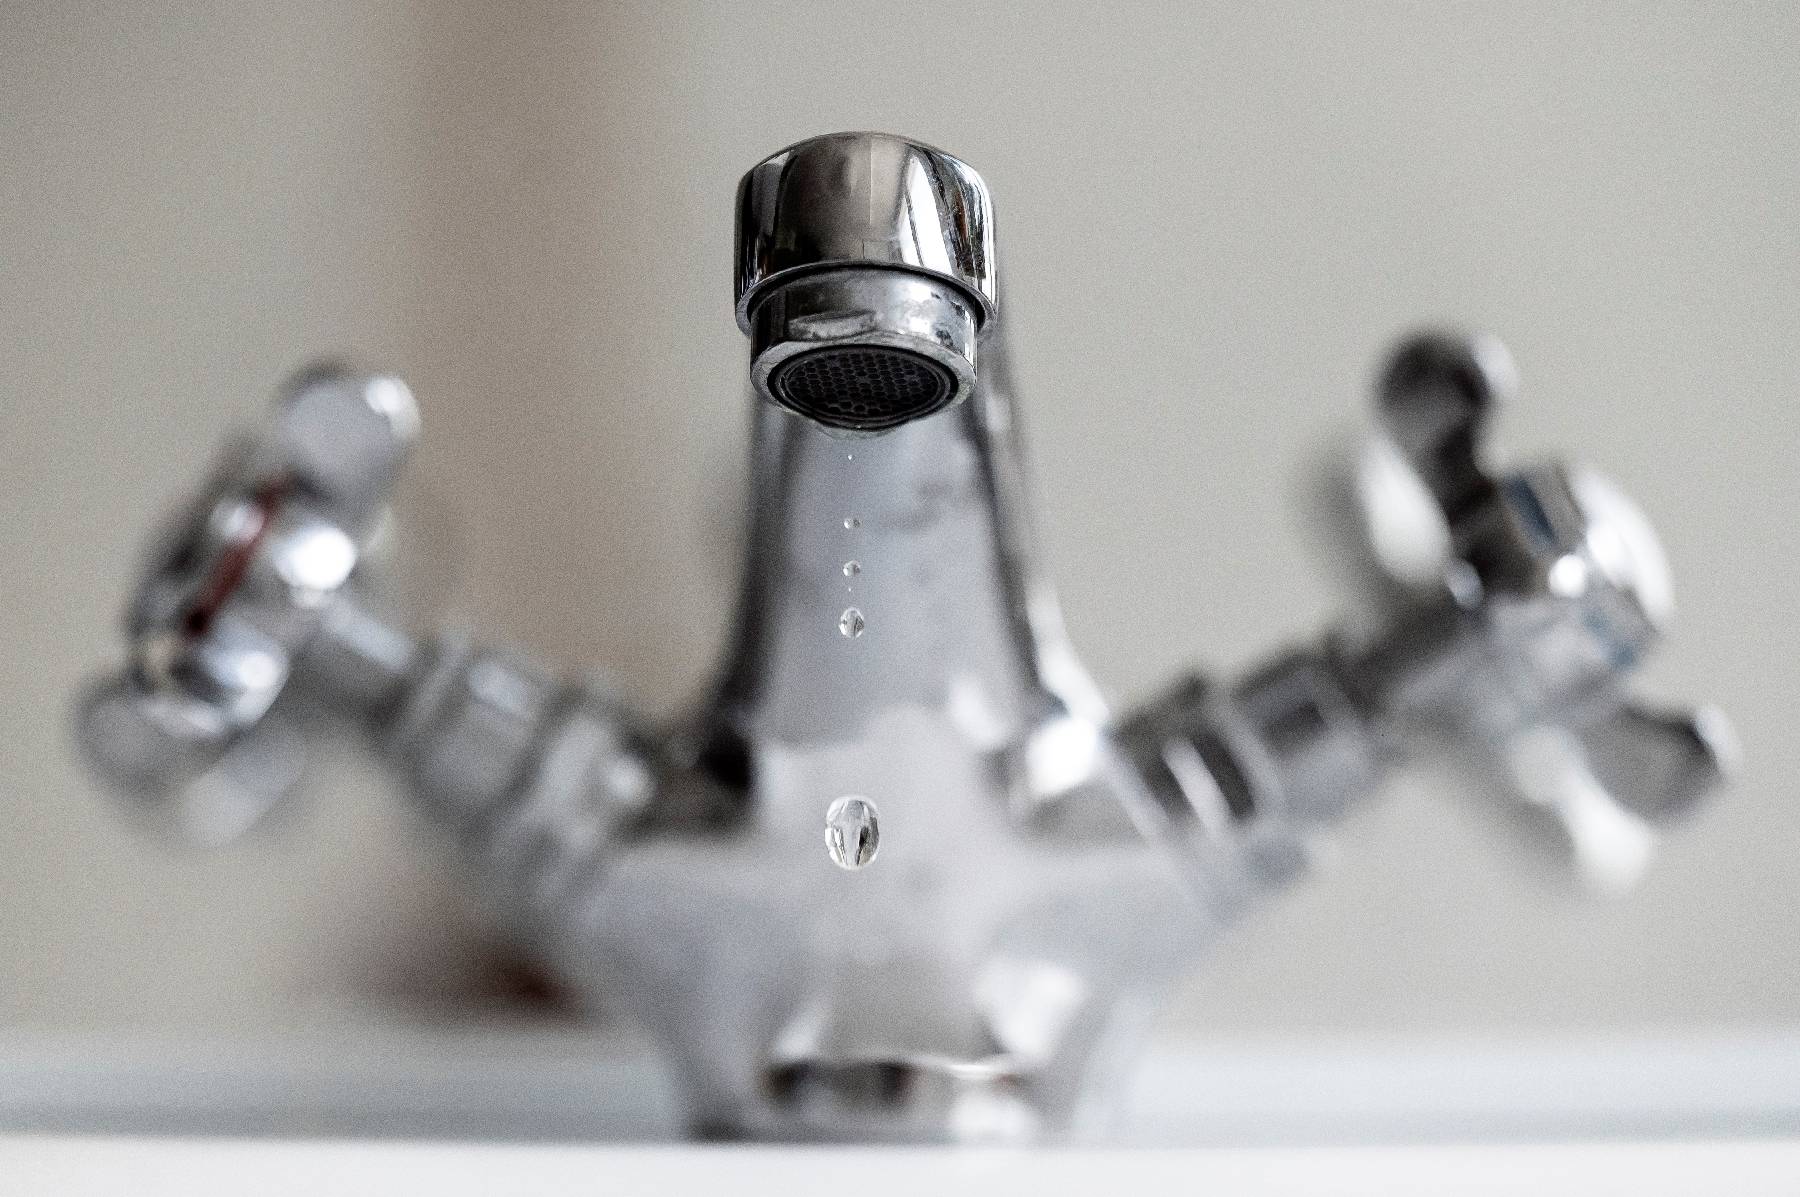 Des résidus d'un fongicide interdit omniprésents dans l'eau du robinet